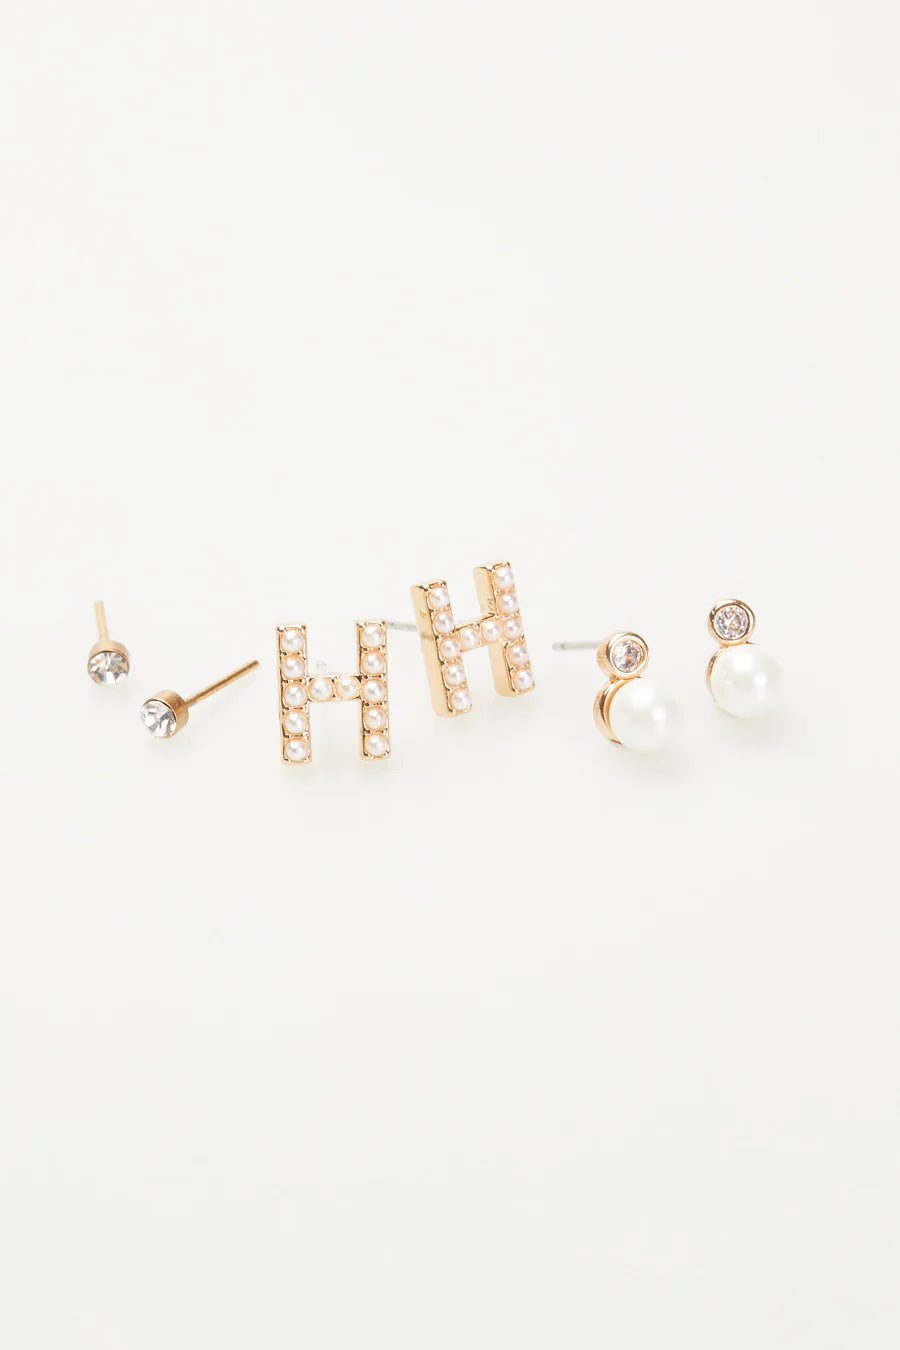 VIOLET & BROOKS: Mini Pearlie Initial Earrings Set